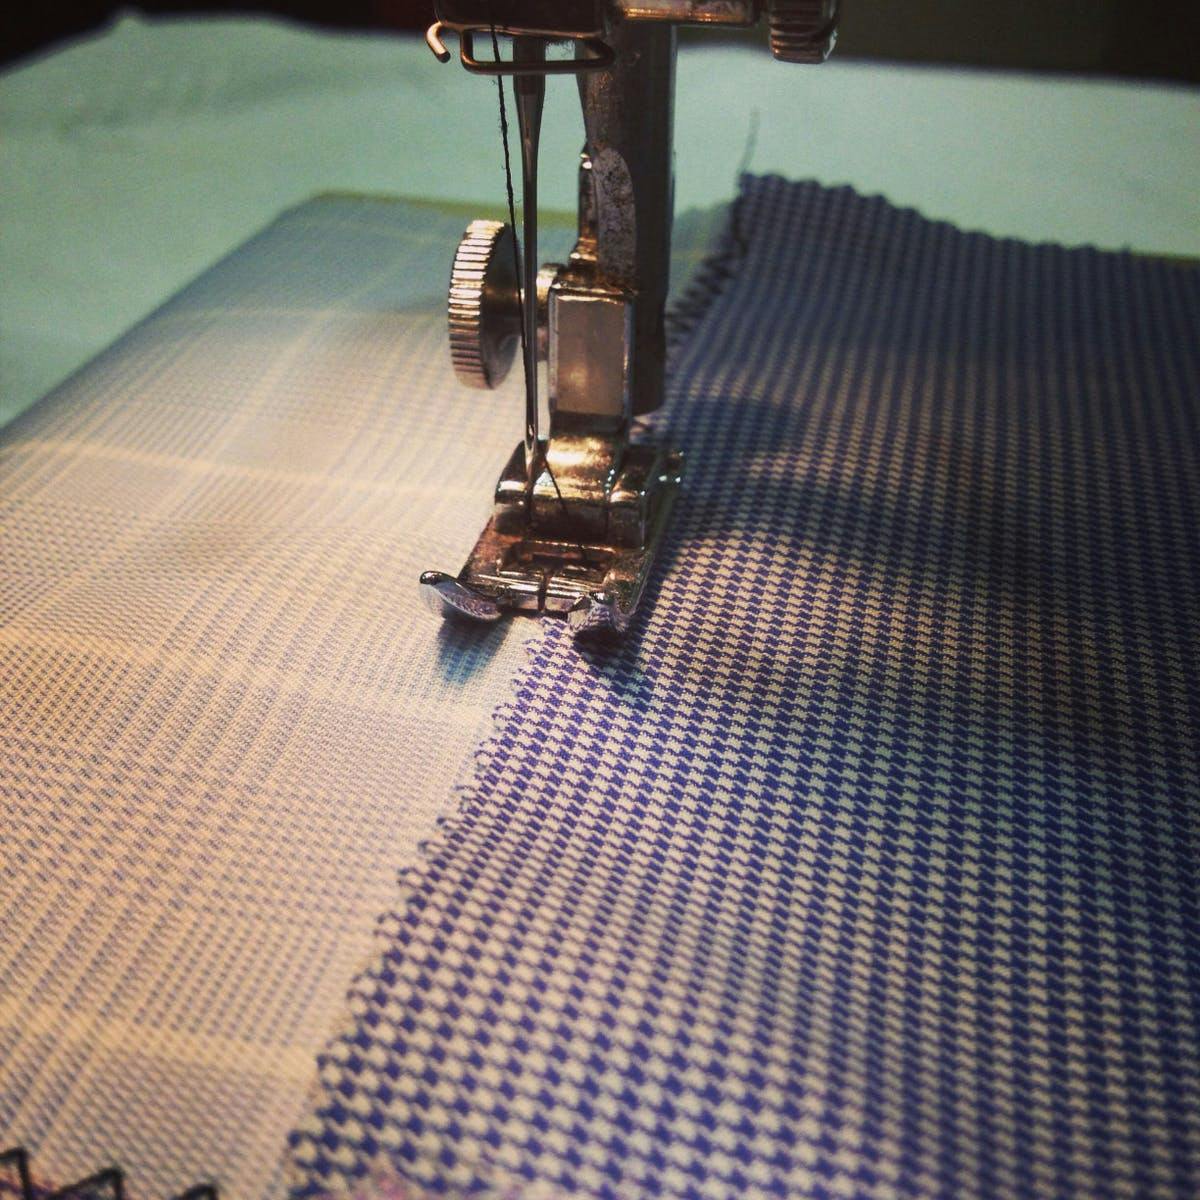 Máquinas de coser más útiles de acuerdo con cada tejido